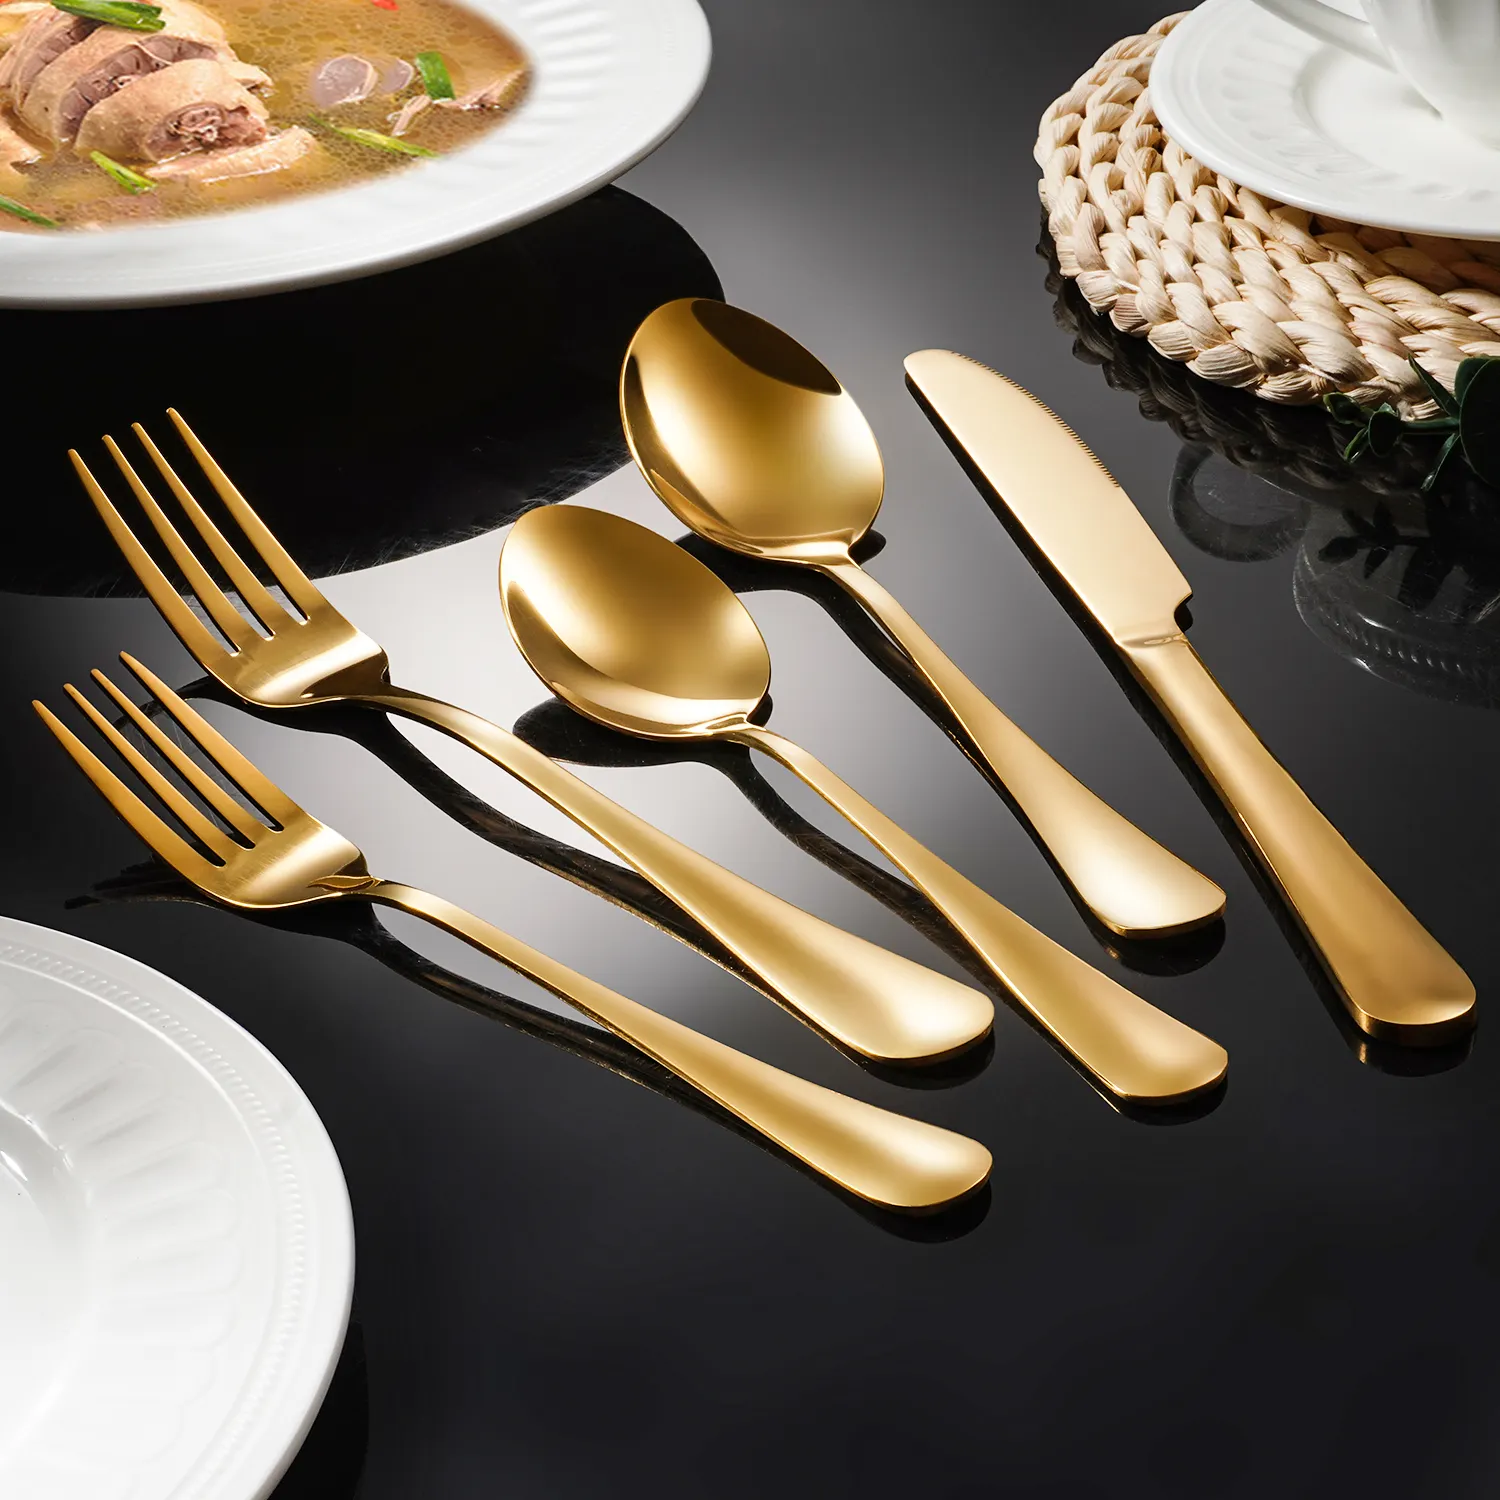 QZQ all'ingrosso 5 pezzi posate posate in acciaio inox cucina festa matrimonio cena oro cucchiaio forchetta coltello posate Set